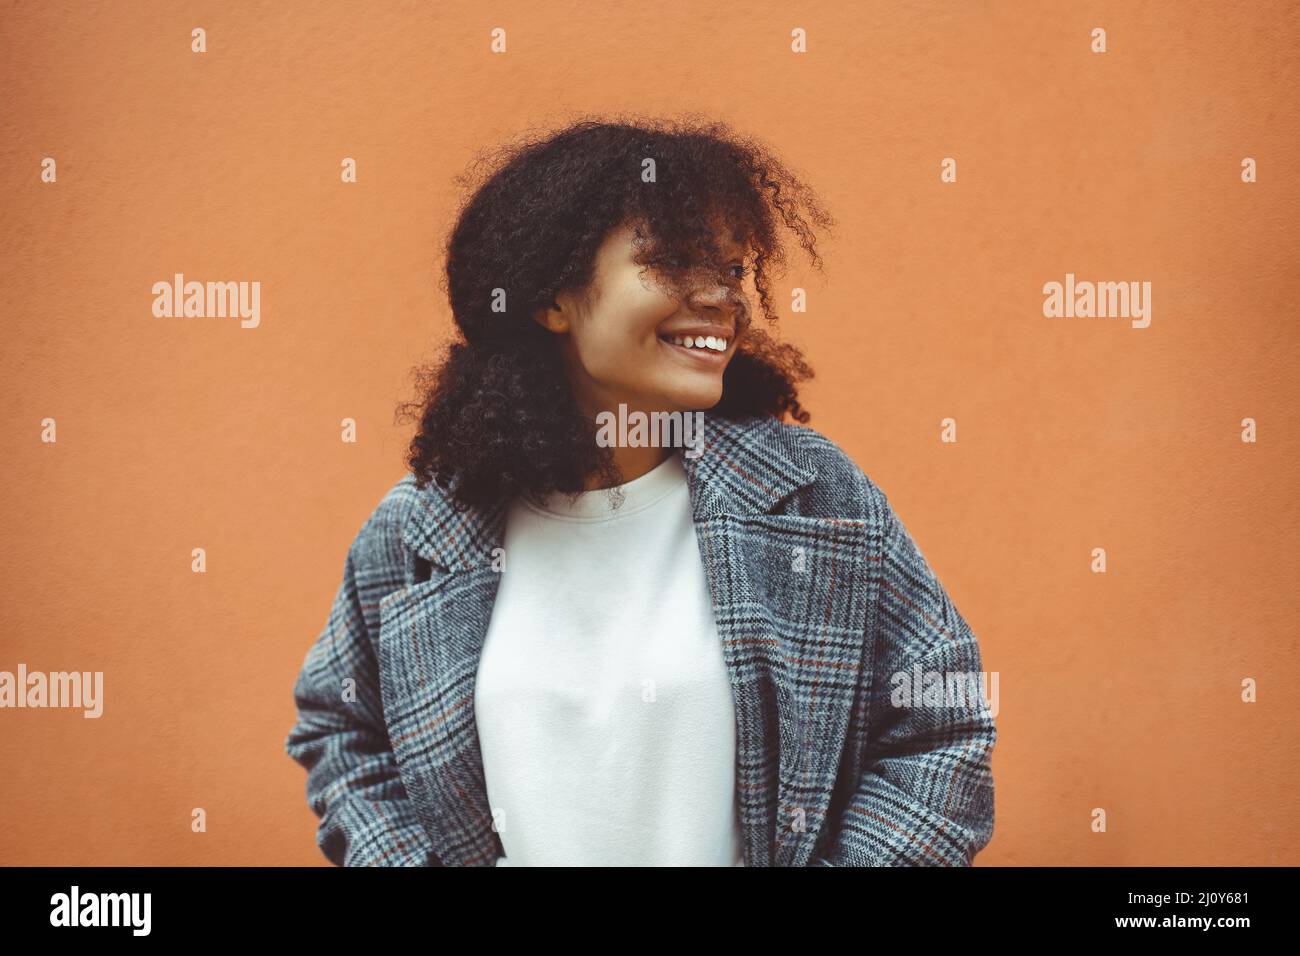 Felice etnia africana ragazza con capelli ricci scuri in elegante cappotto guardando da parte e sorridente Foto Stock